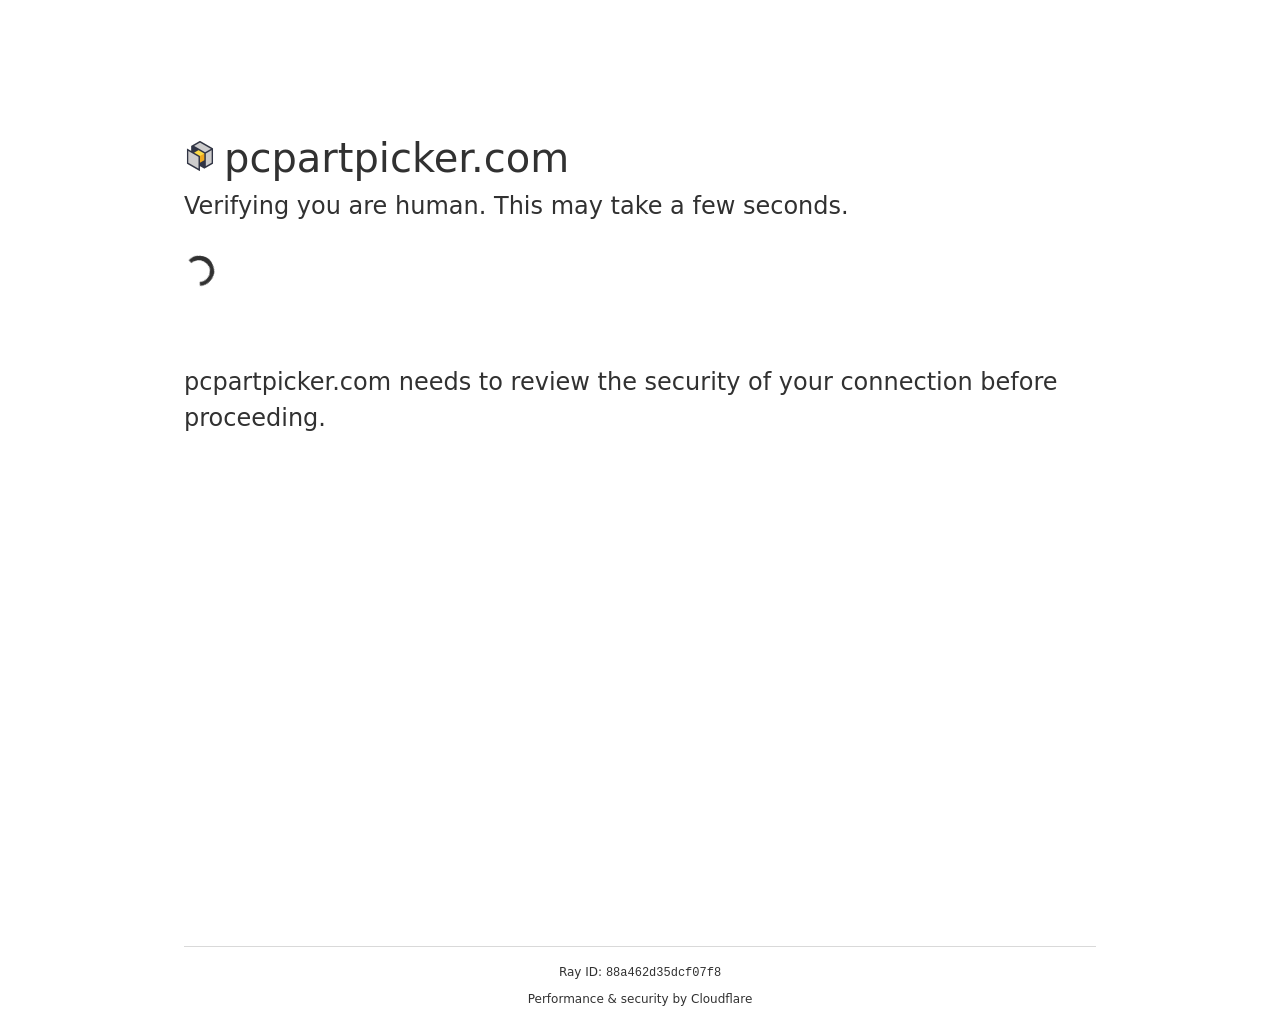 pcpartpicker.com